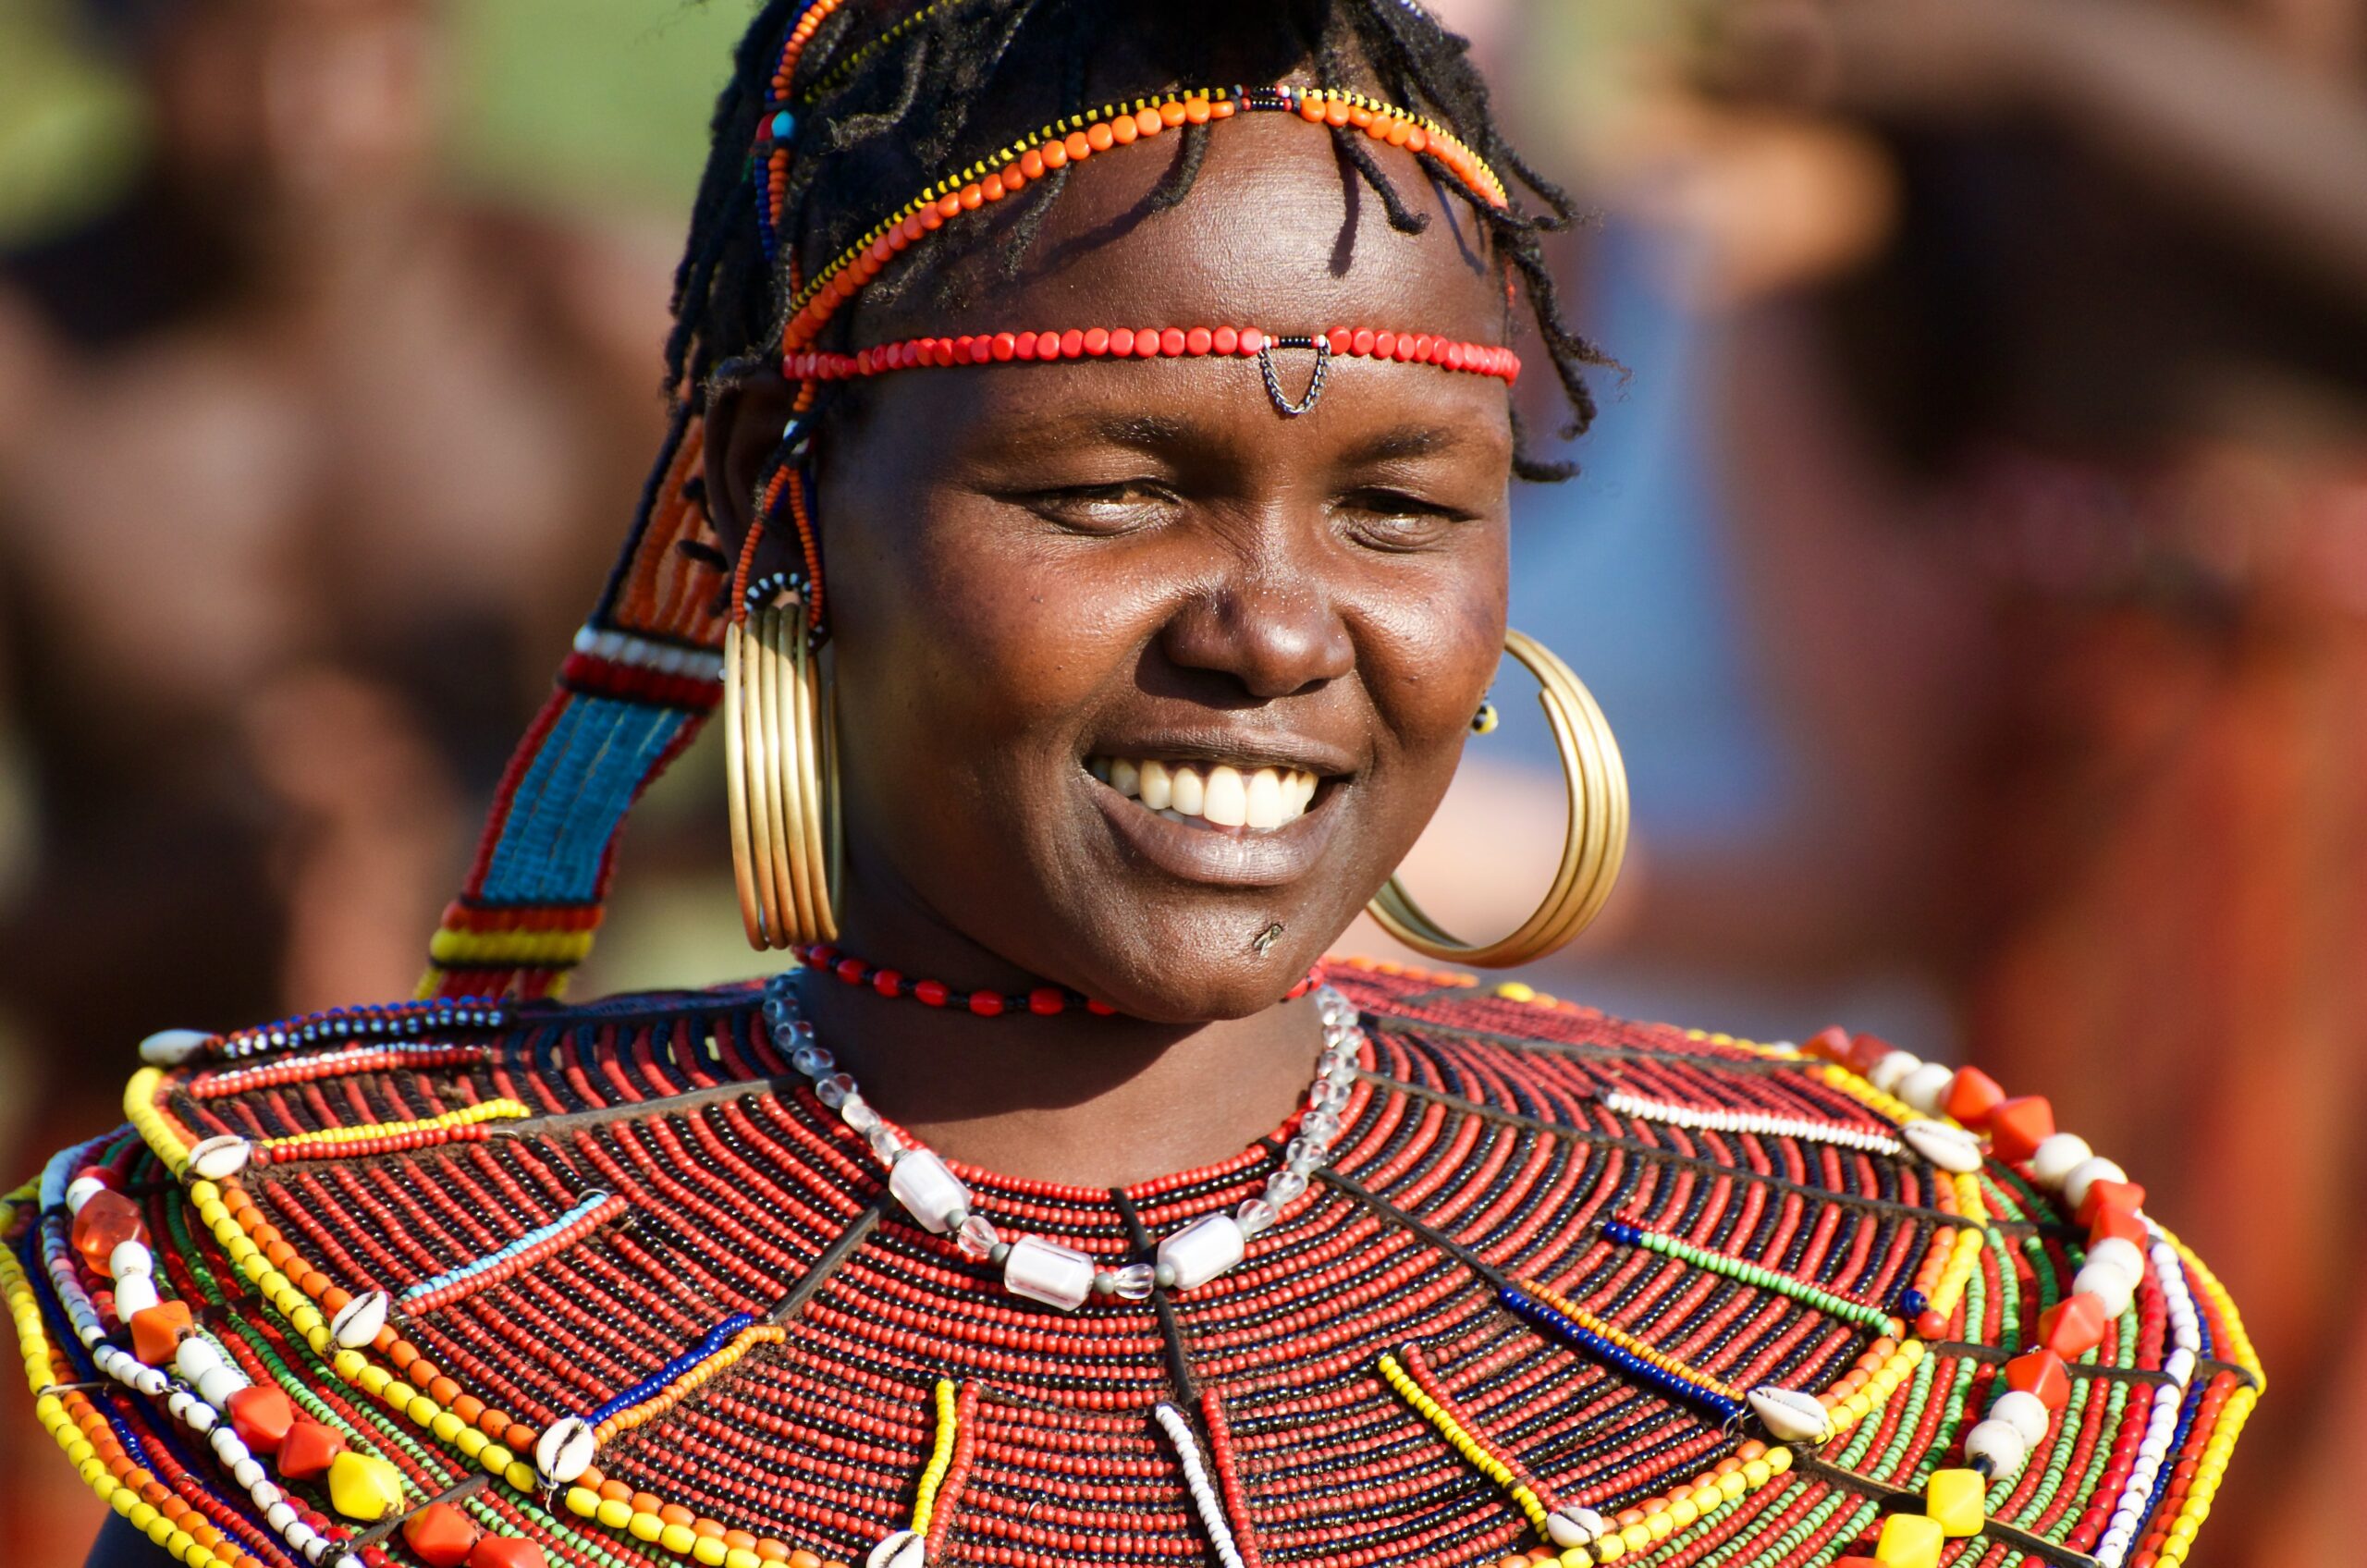 Datoga culture in Tanzania-Mado Tours Africa